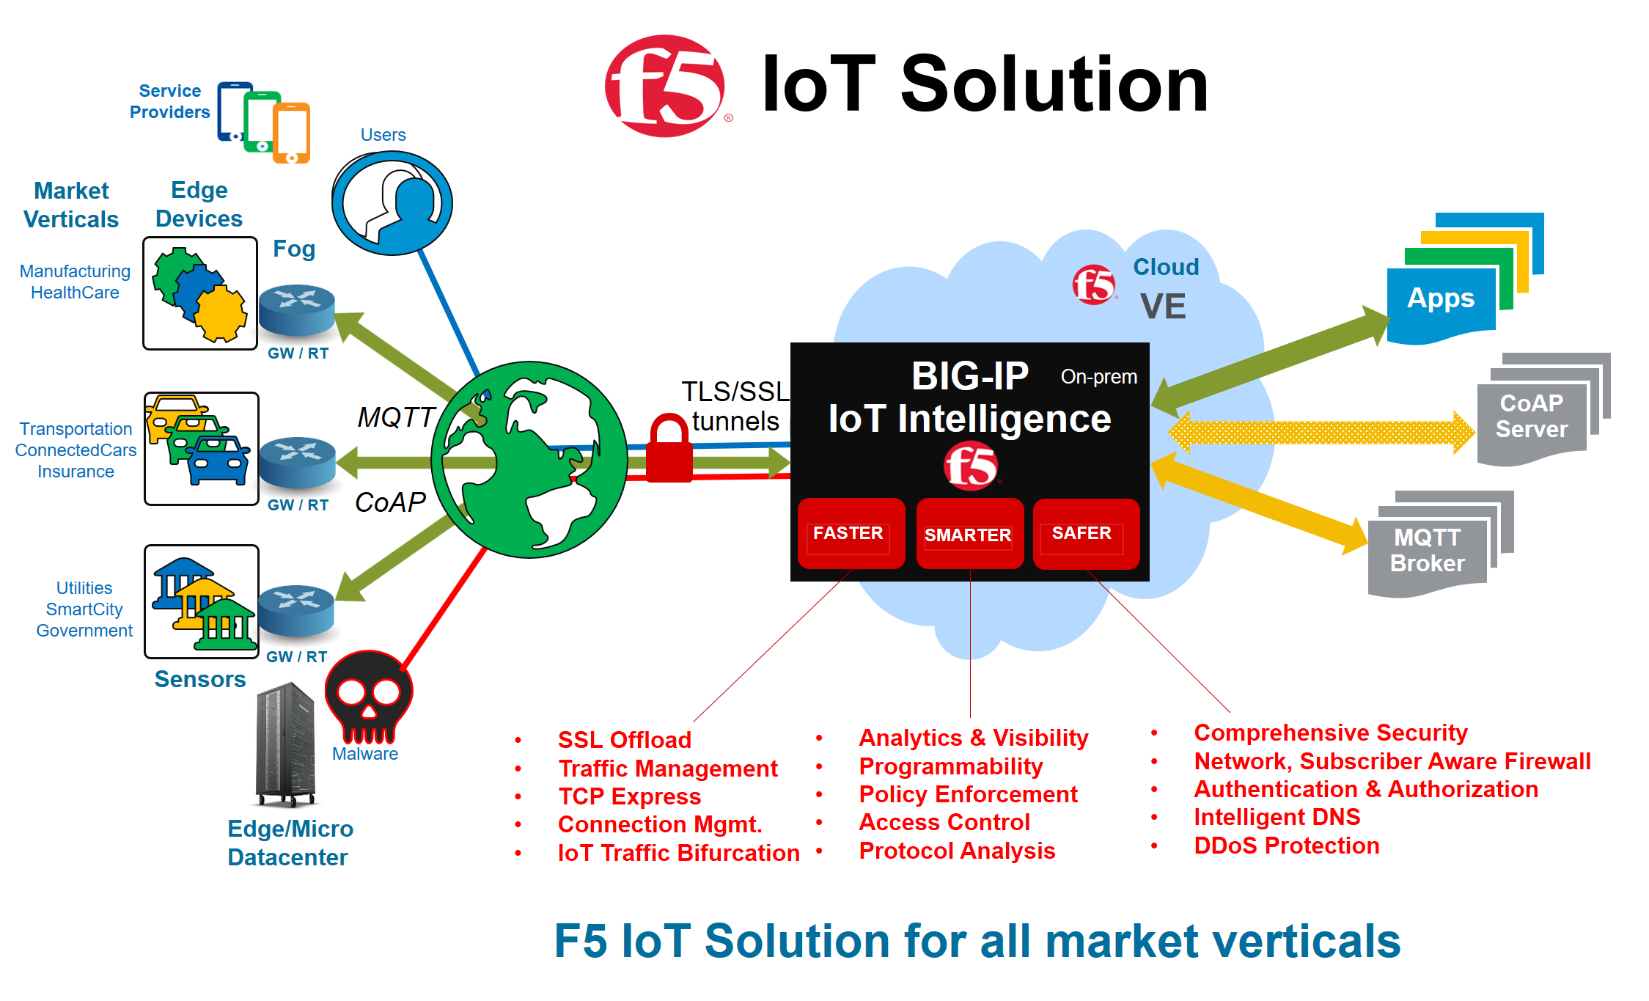 F5 IoT Solution